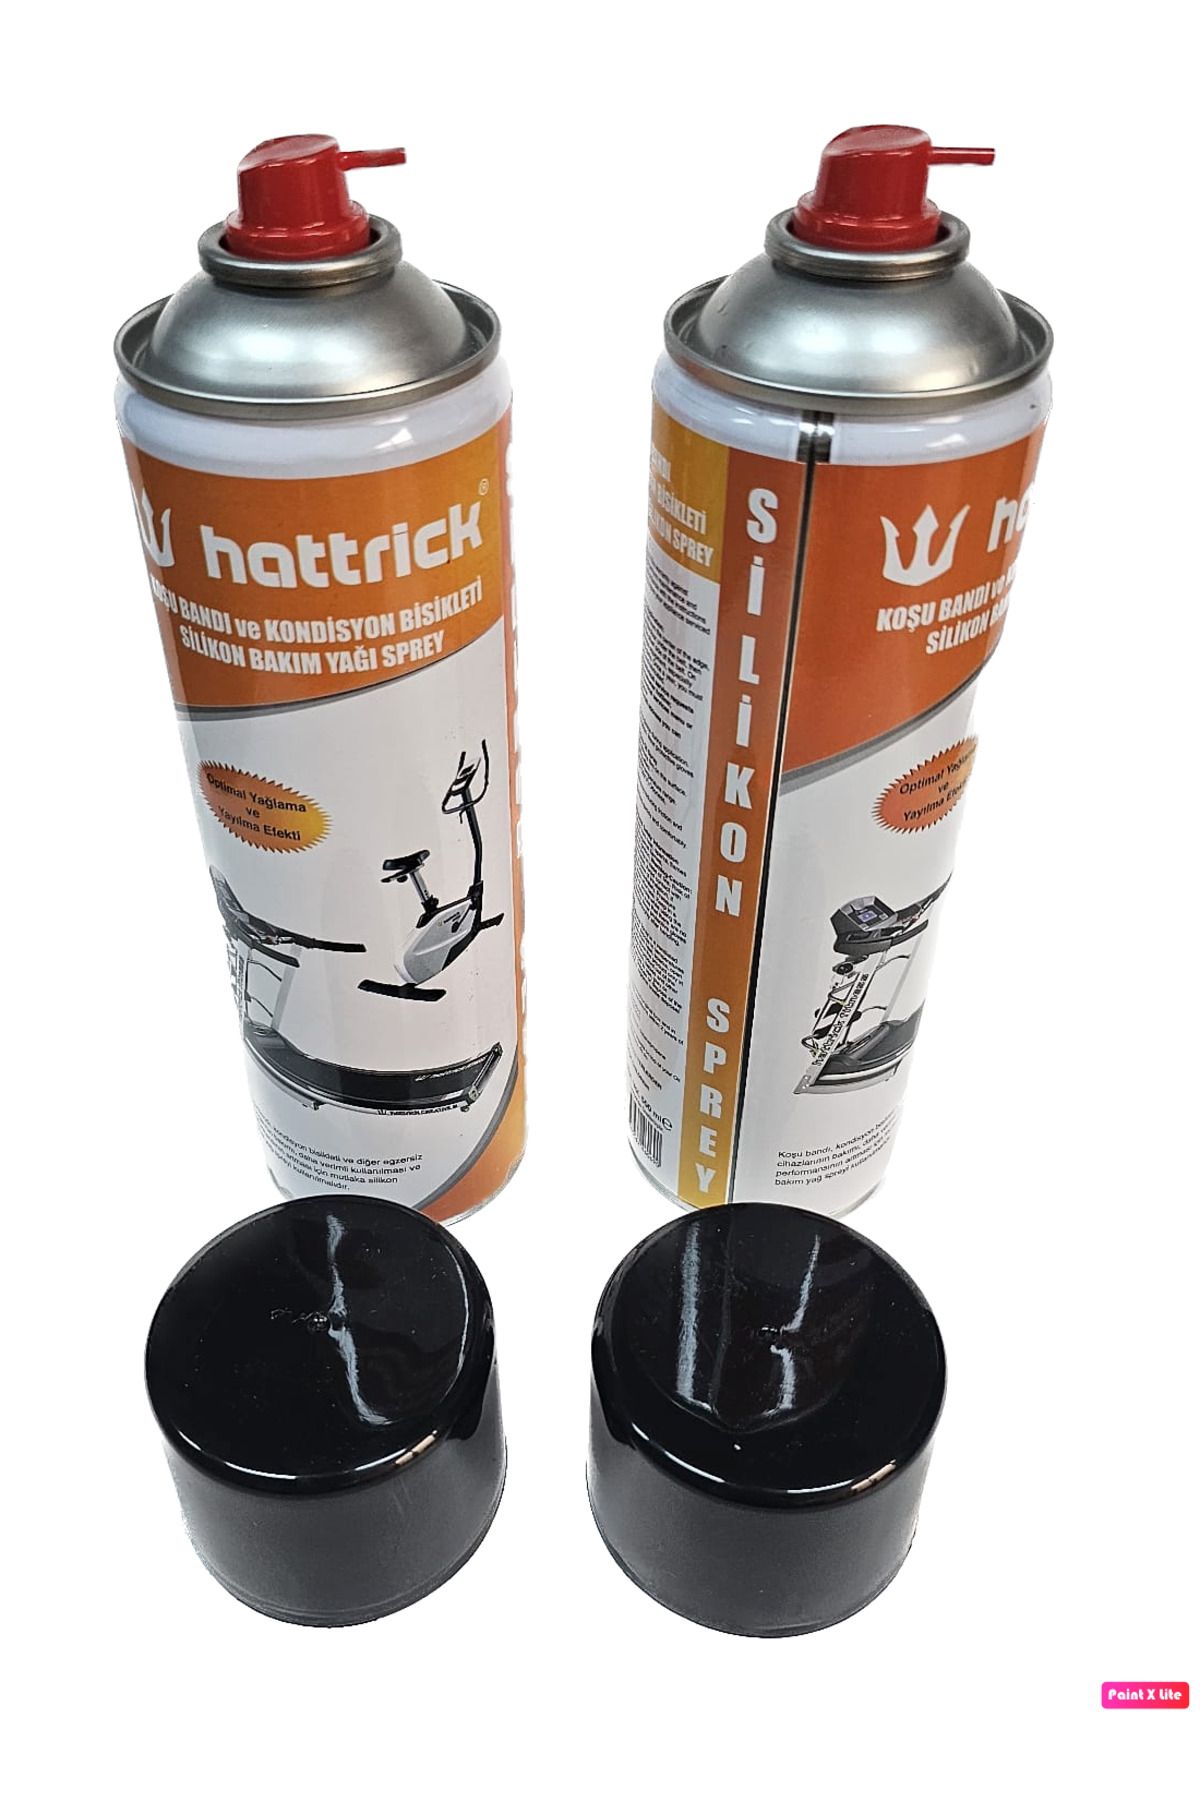 Hattrick 2 ADET SET Hattrick Koşu Bandı Ve Kondisyon Bisikleti Silikon Bakım Yağı Spreyi 500 ml